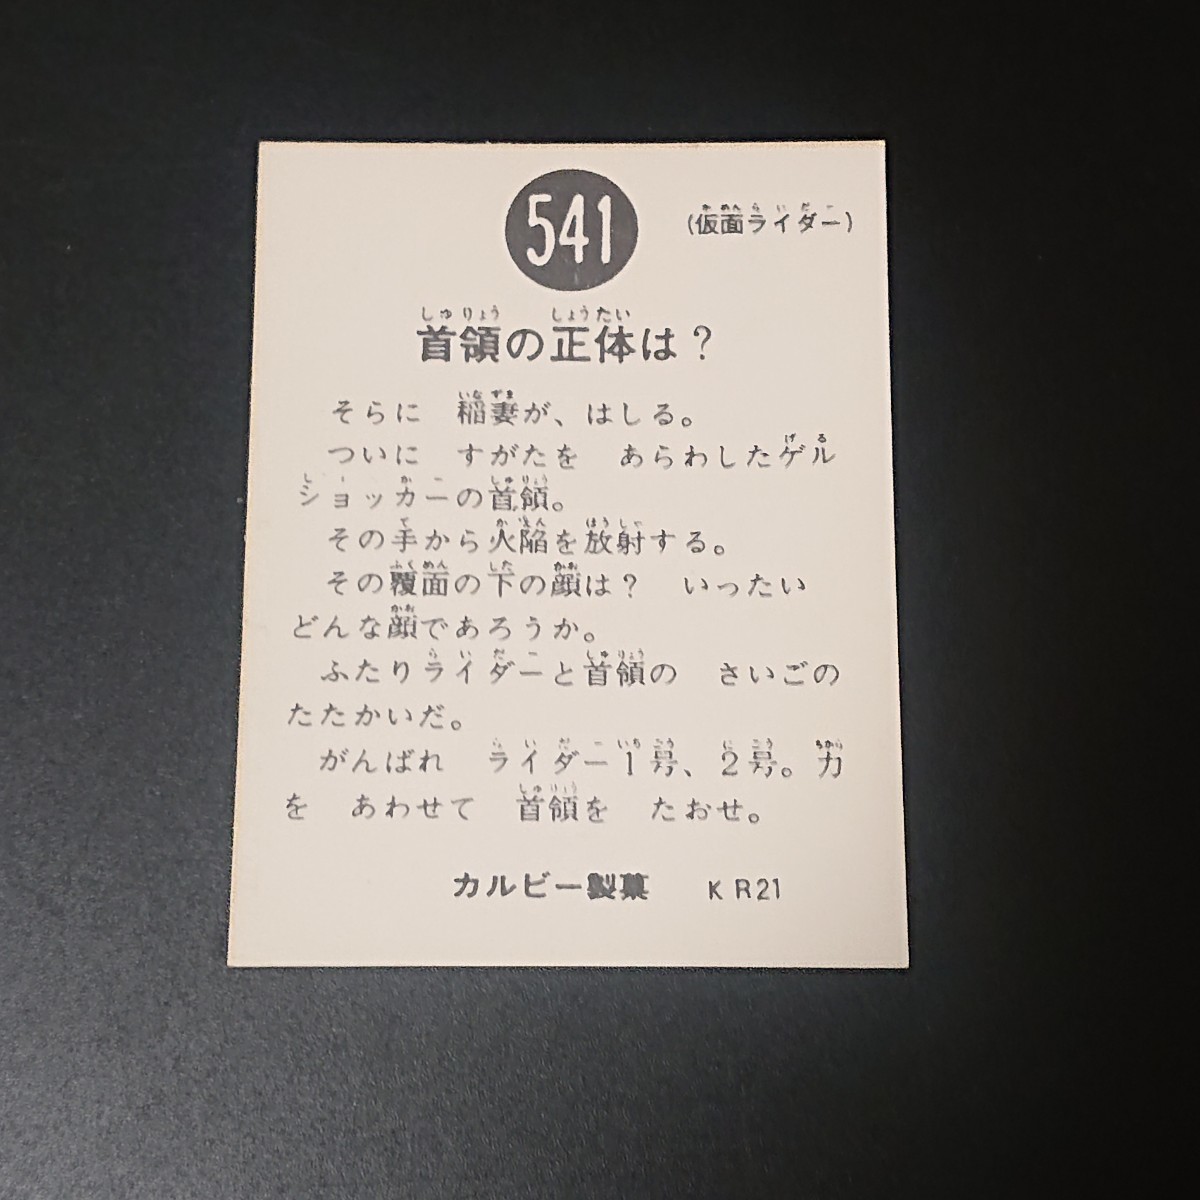 復刻版 仮面ライダー カード 541番 カルビー ライダーカード 旧 O_画像2